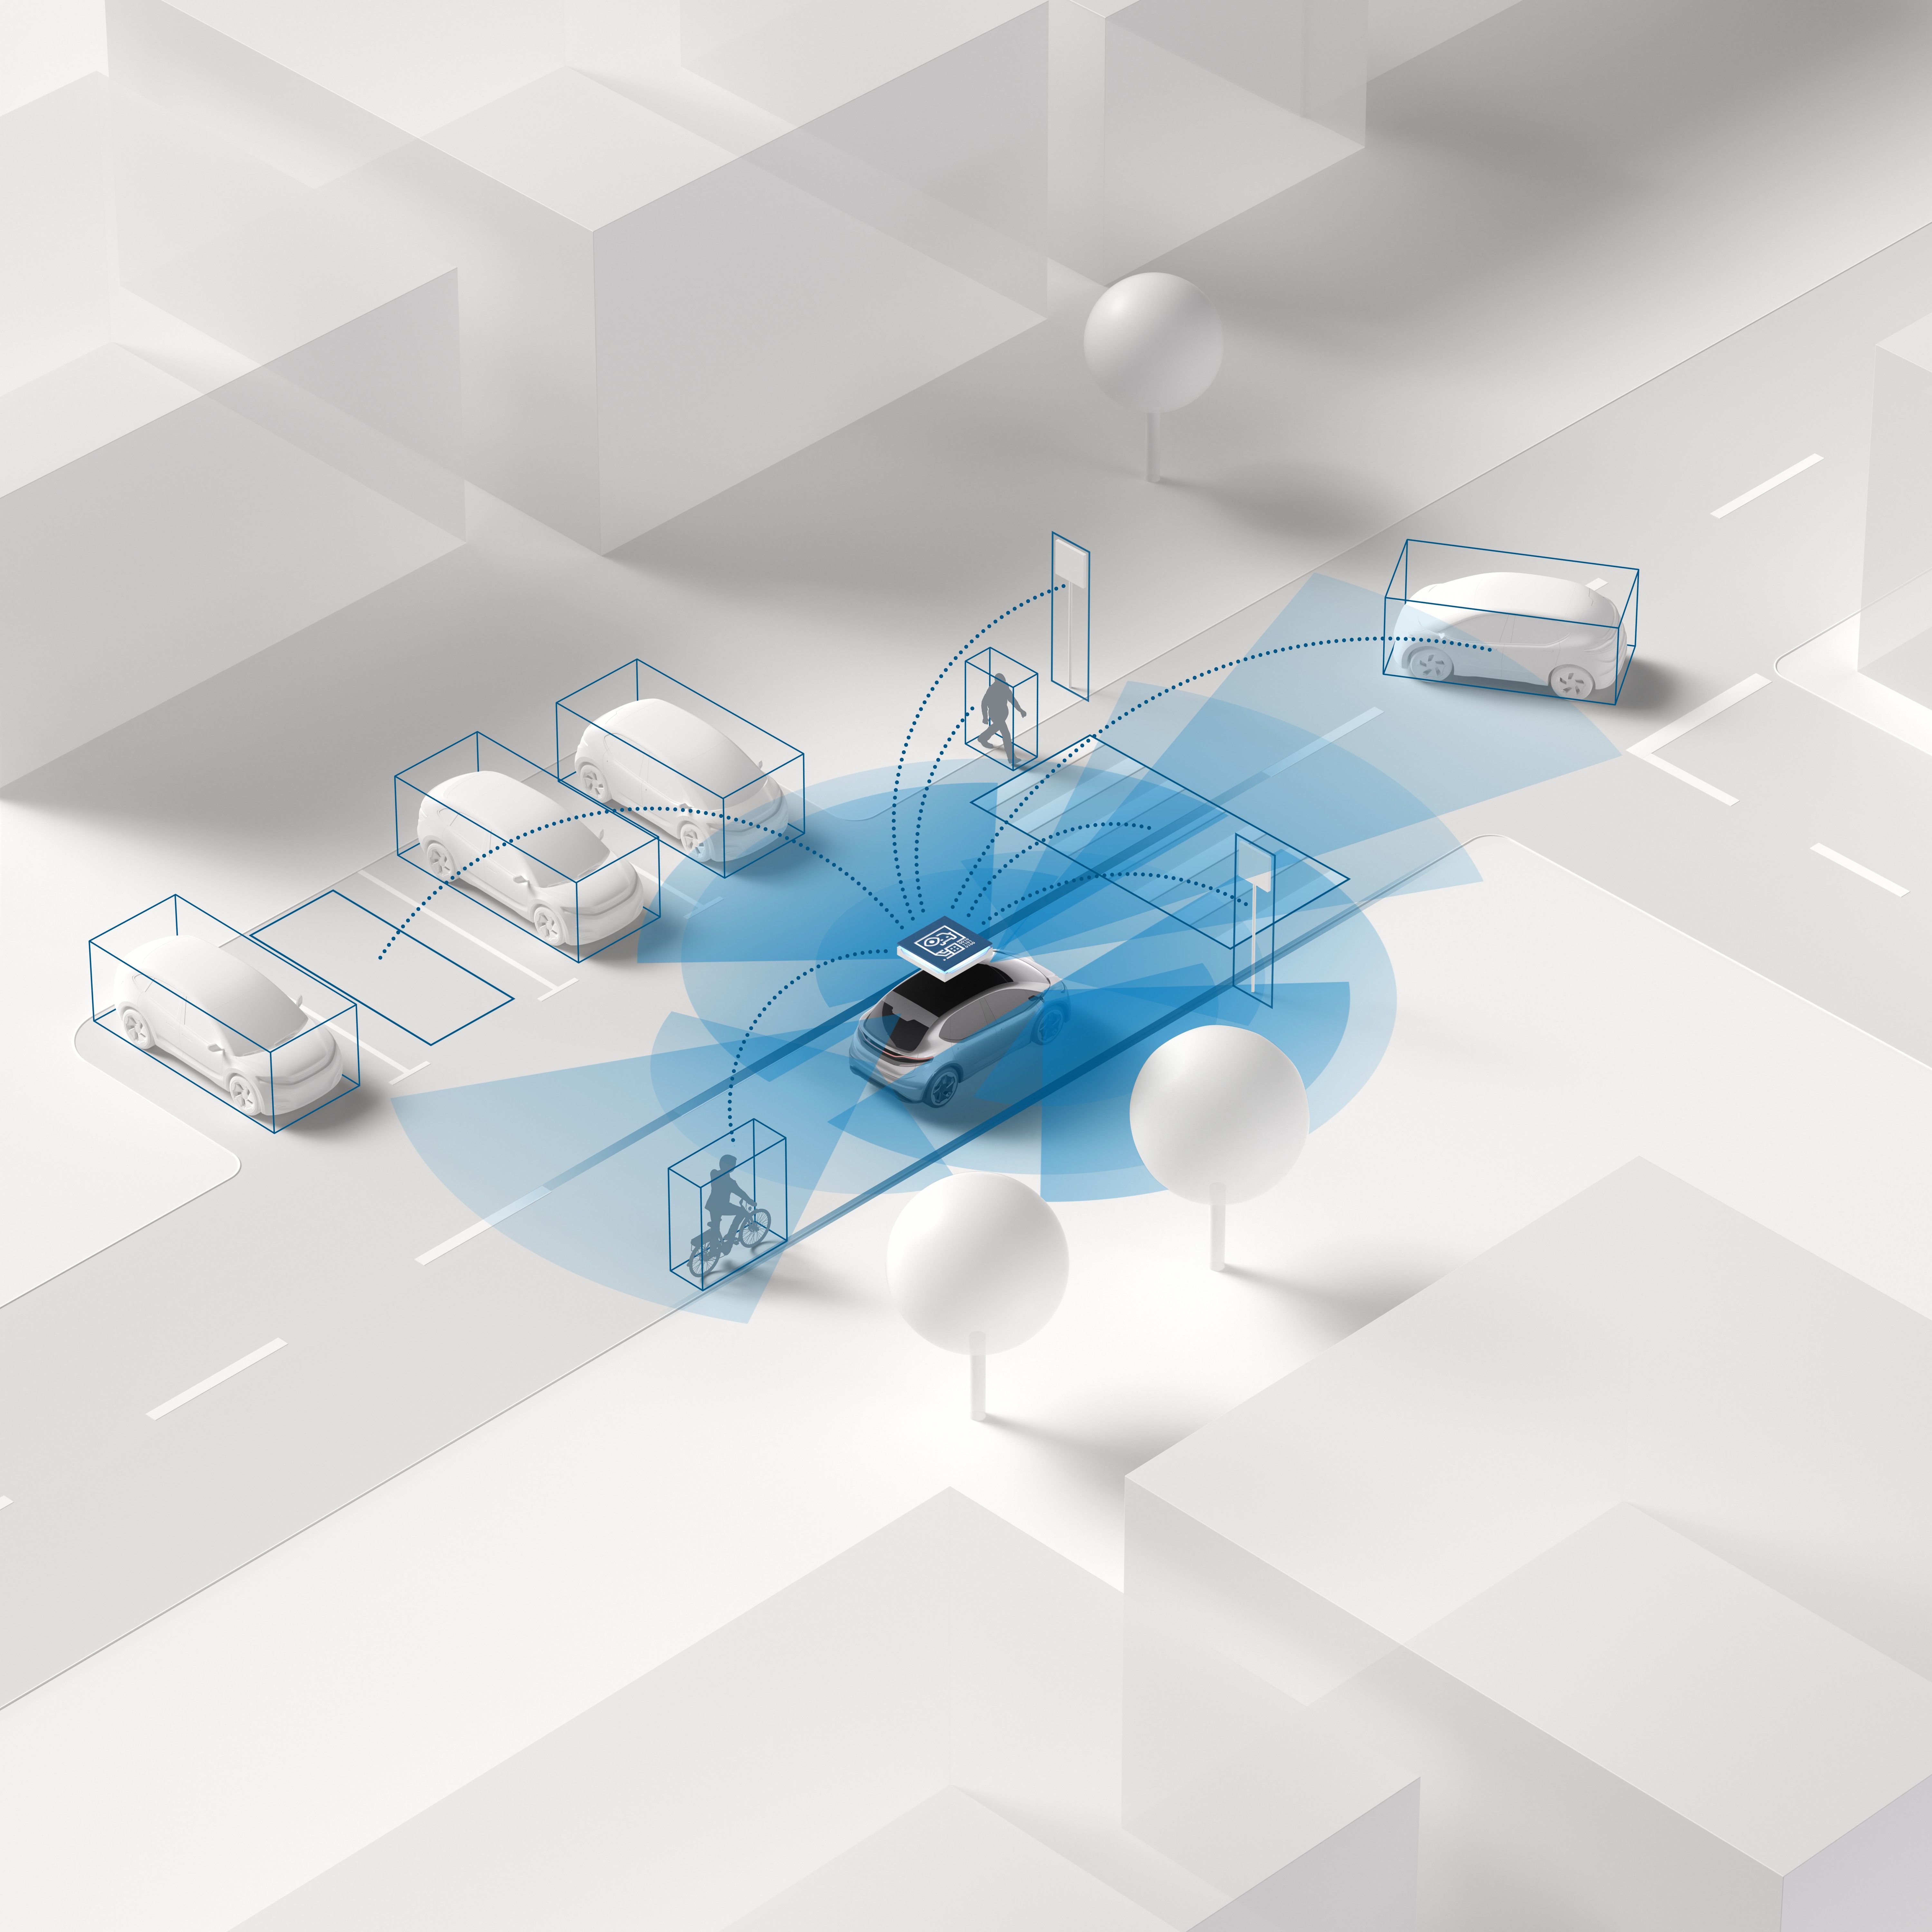 Hardware, software e servizi: Bosch offre soluzioni intelligenti per la mobilità basata su software